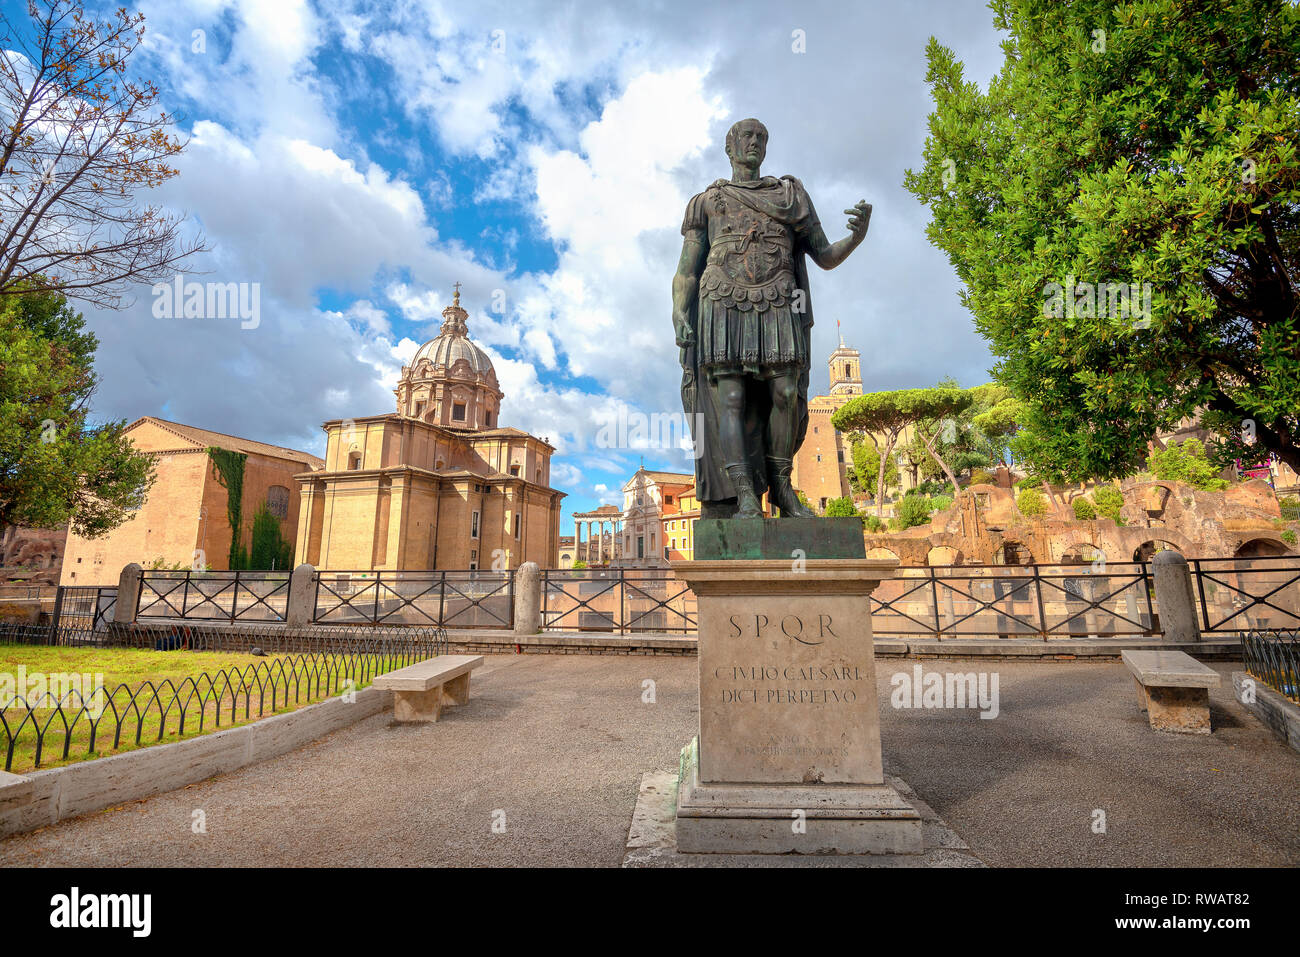 Statue en bronze de César et vue sur le Forum romain de Rome. Italie Banque D'Images